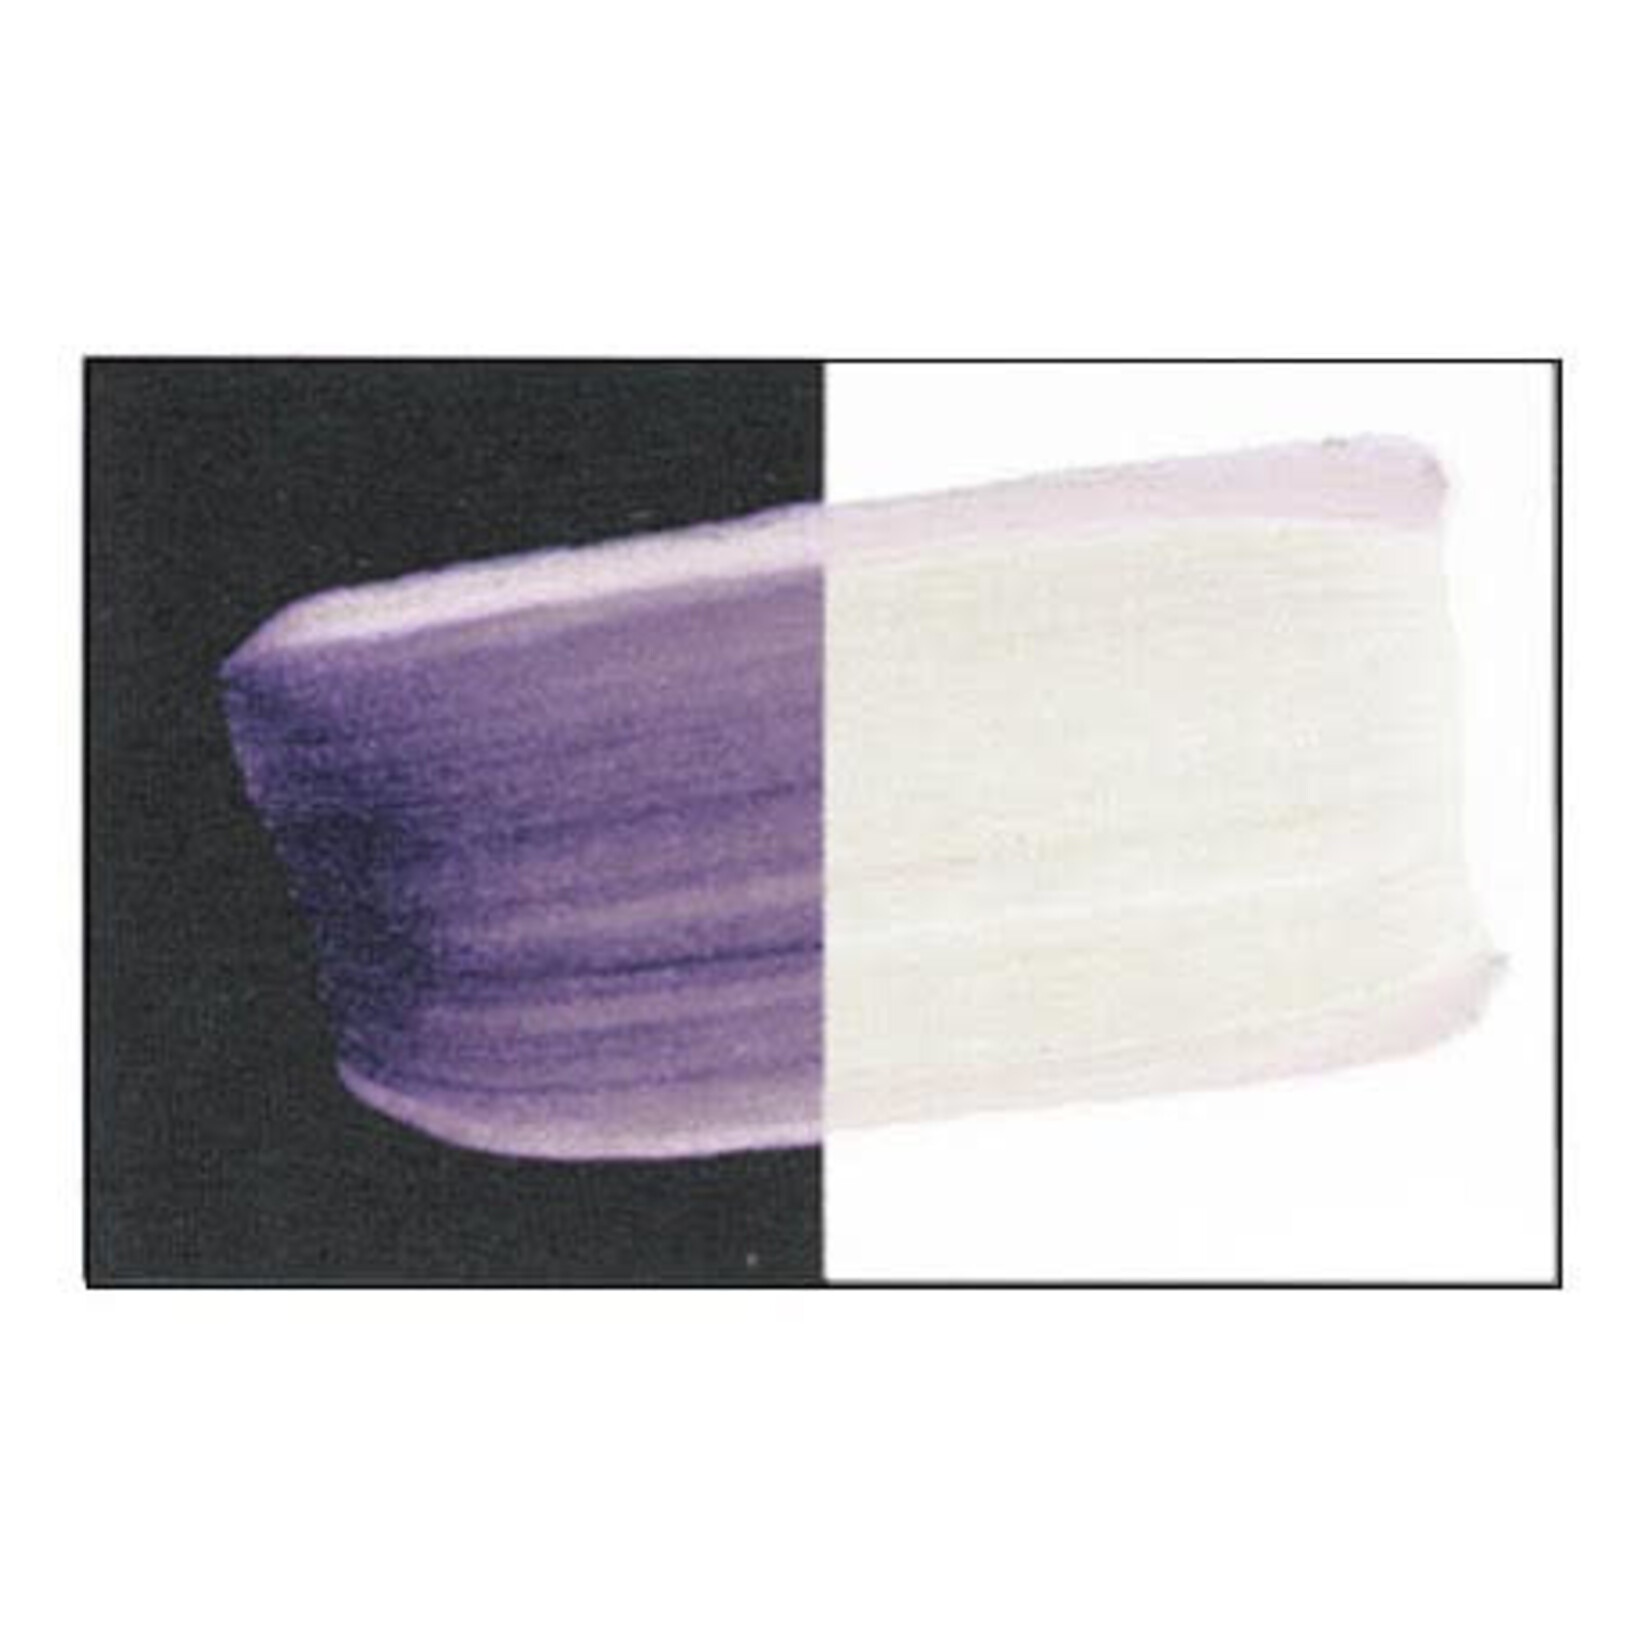 Golden Fluid Interference Violet (fine) 1 oz Series 7